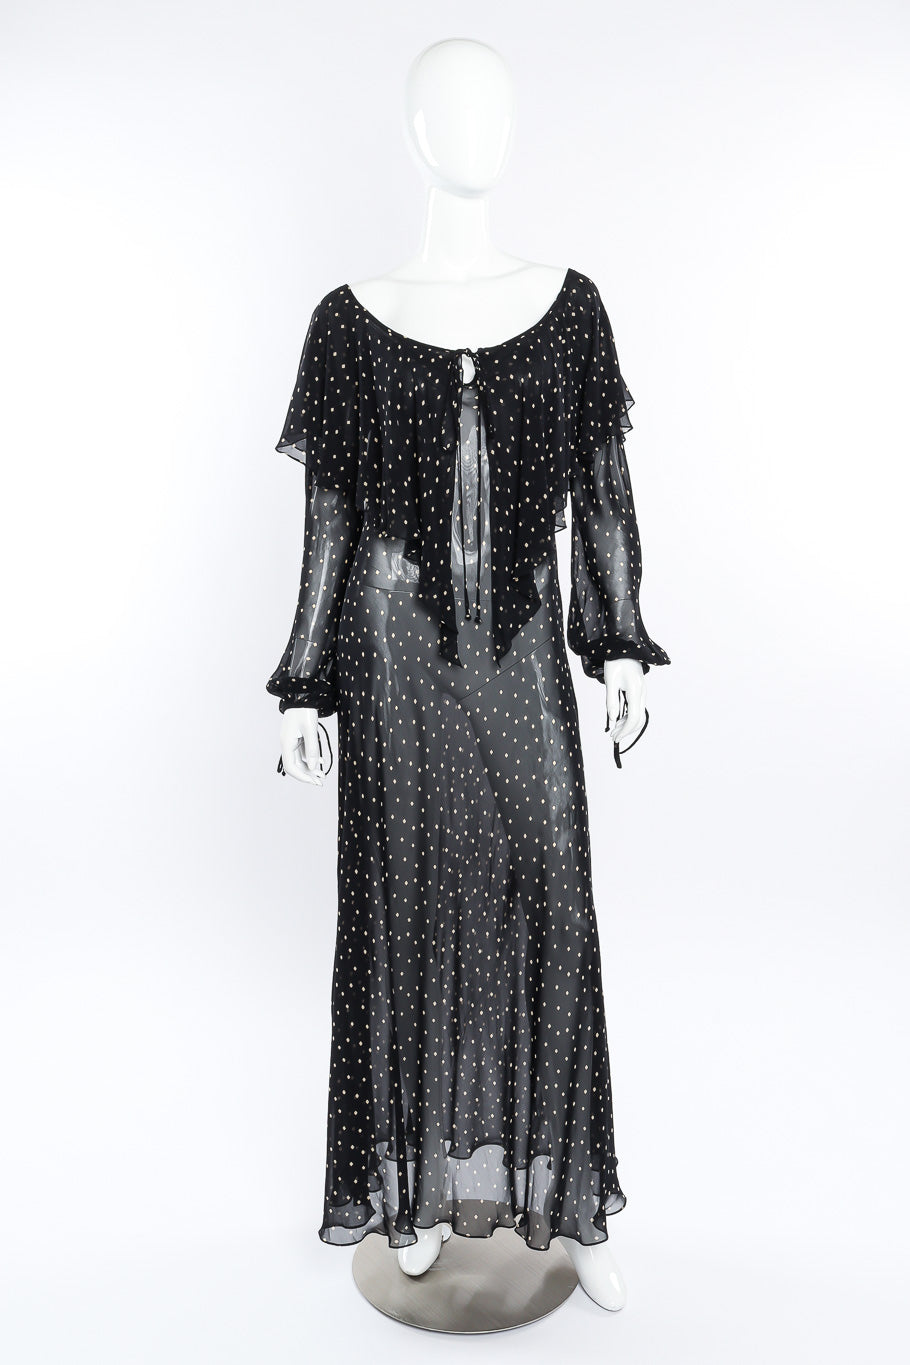 Donna Karan Diamond Dot Ruffle Dress front view on mannequin @Recessla